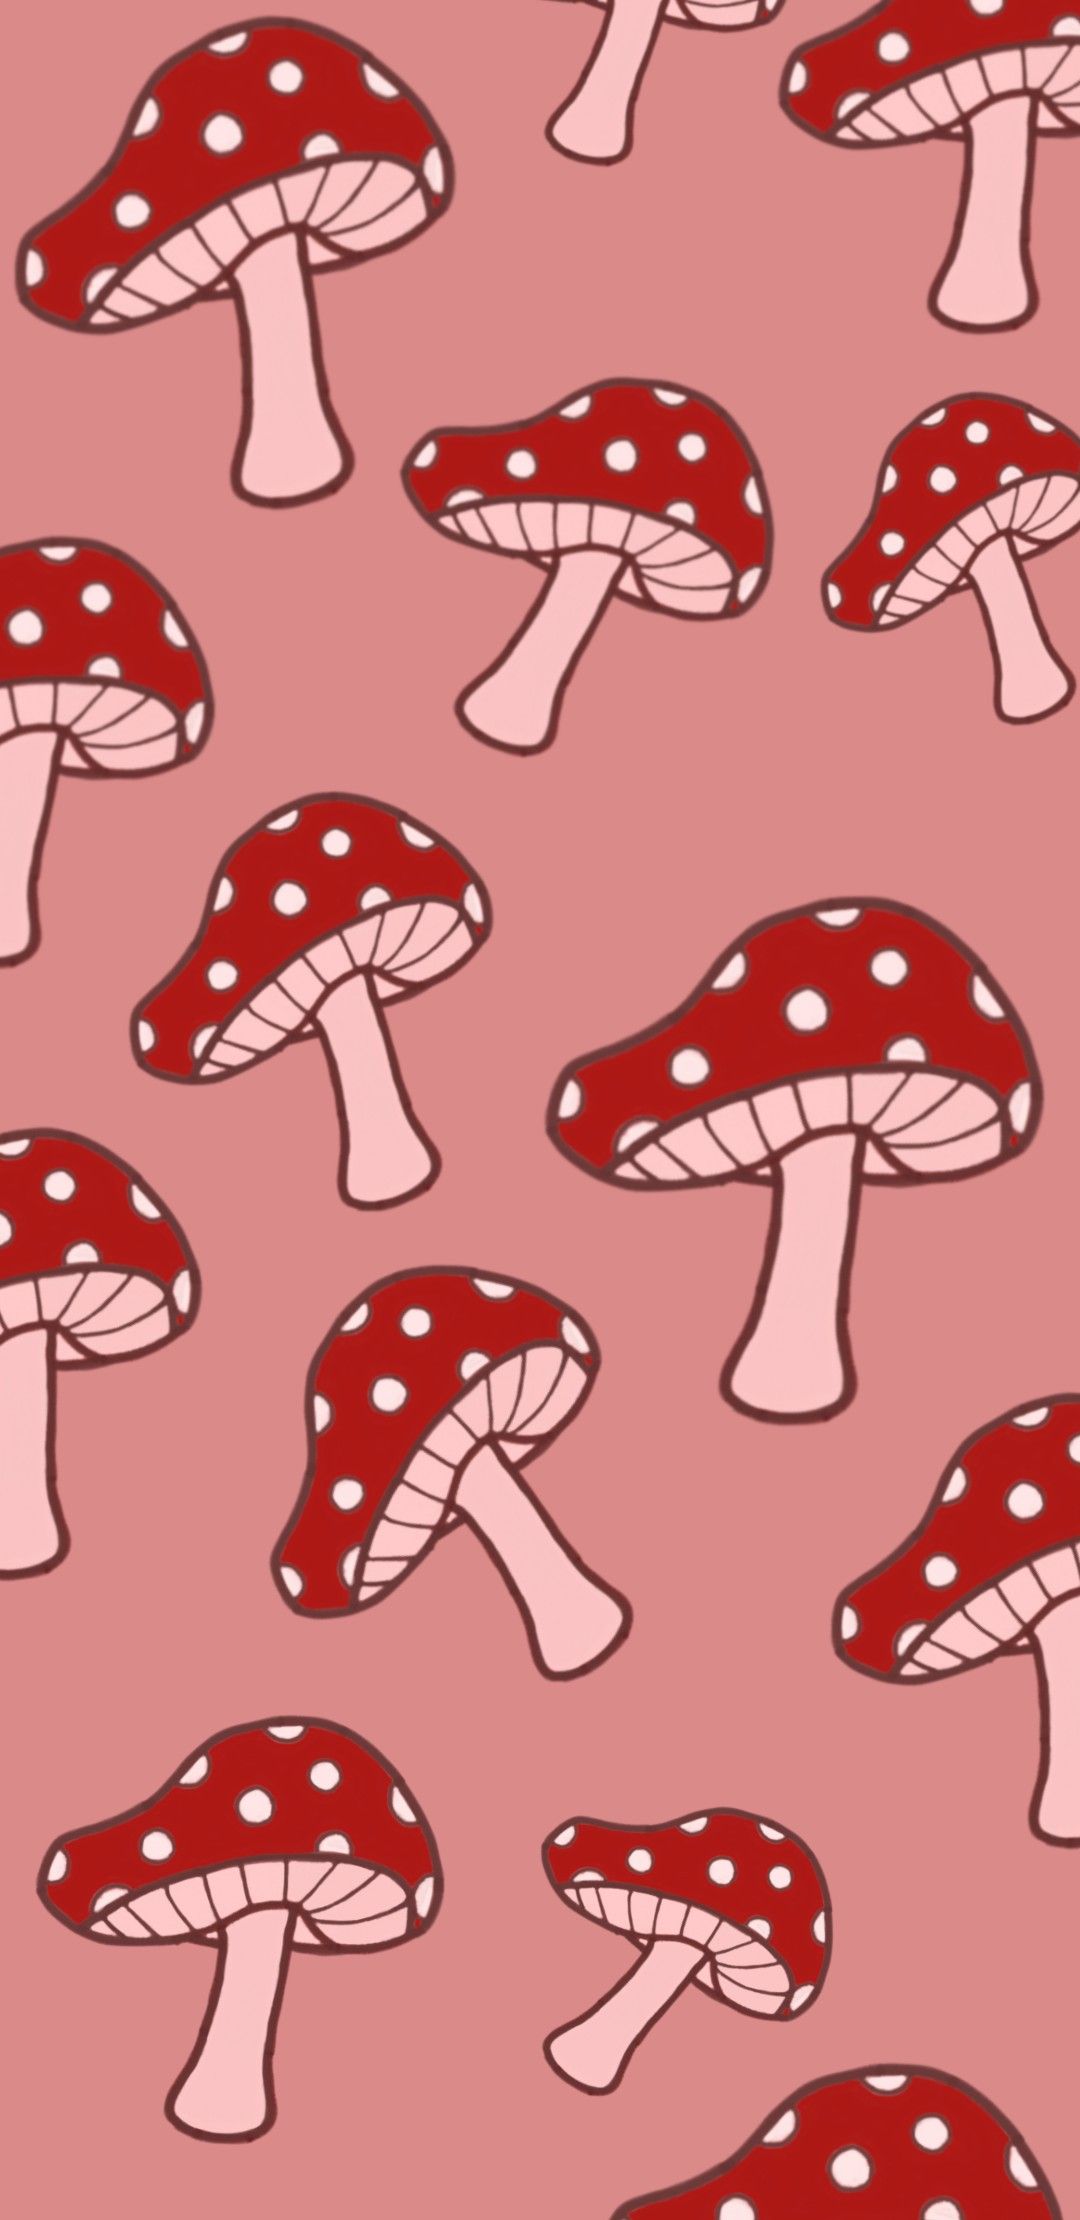 Mushroom wallpaper. Mushroom wallpaper, iPhone wallpaper pattern, Frog wallpaper